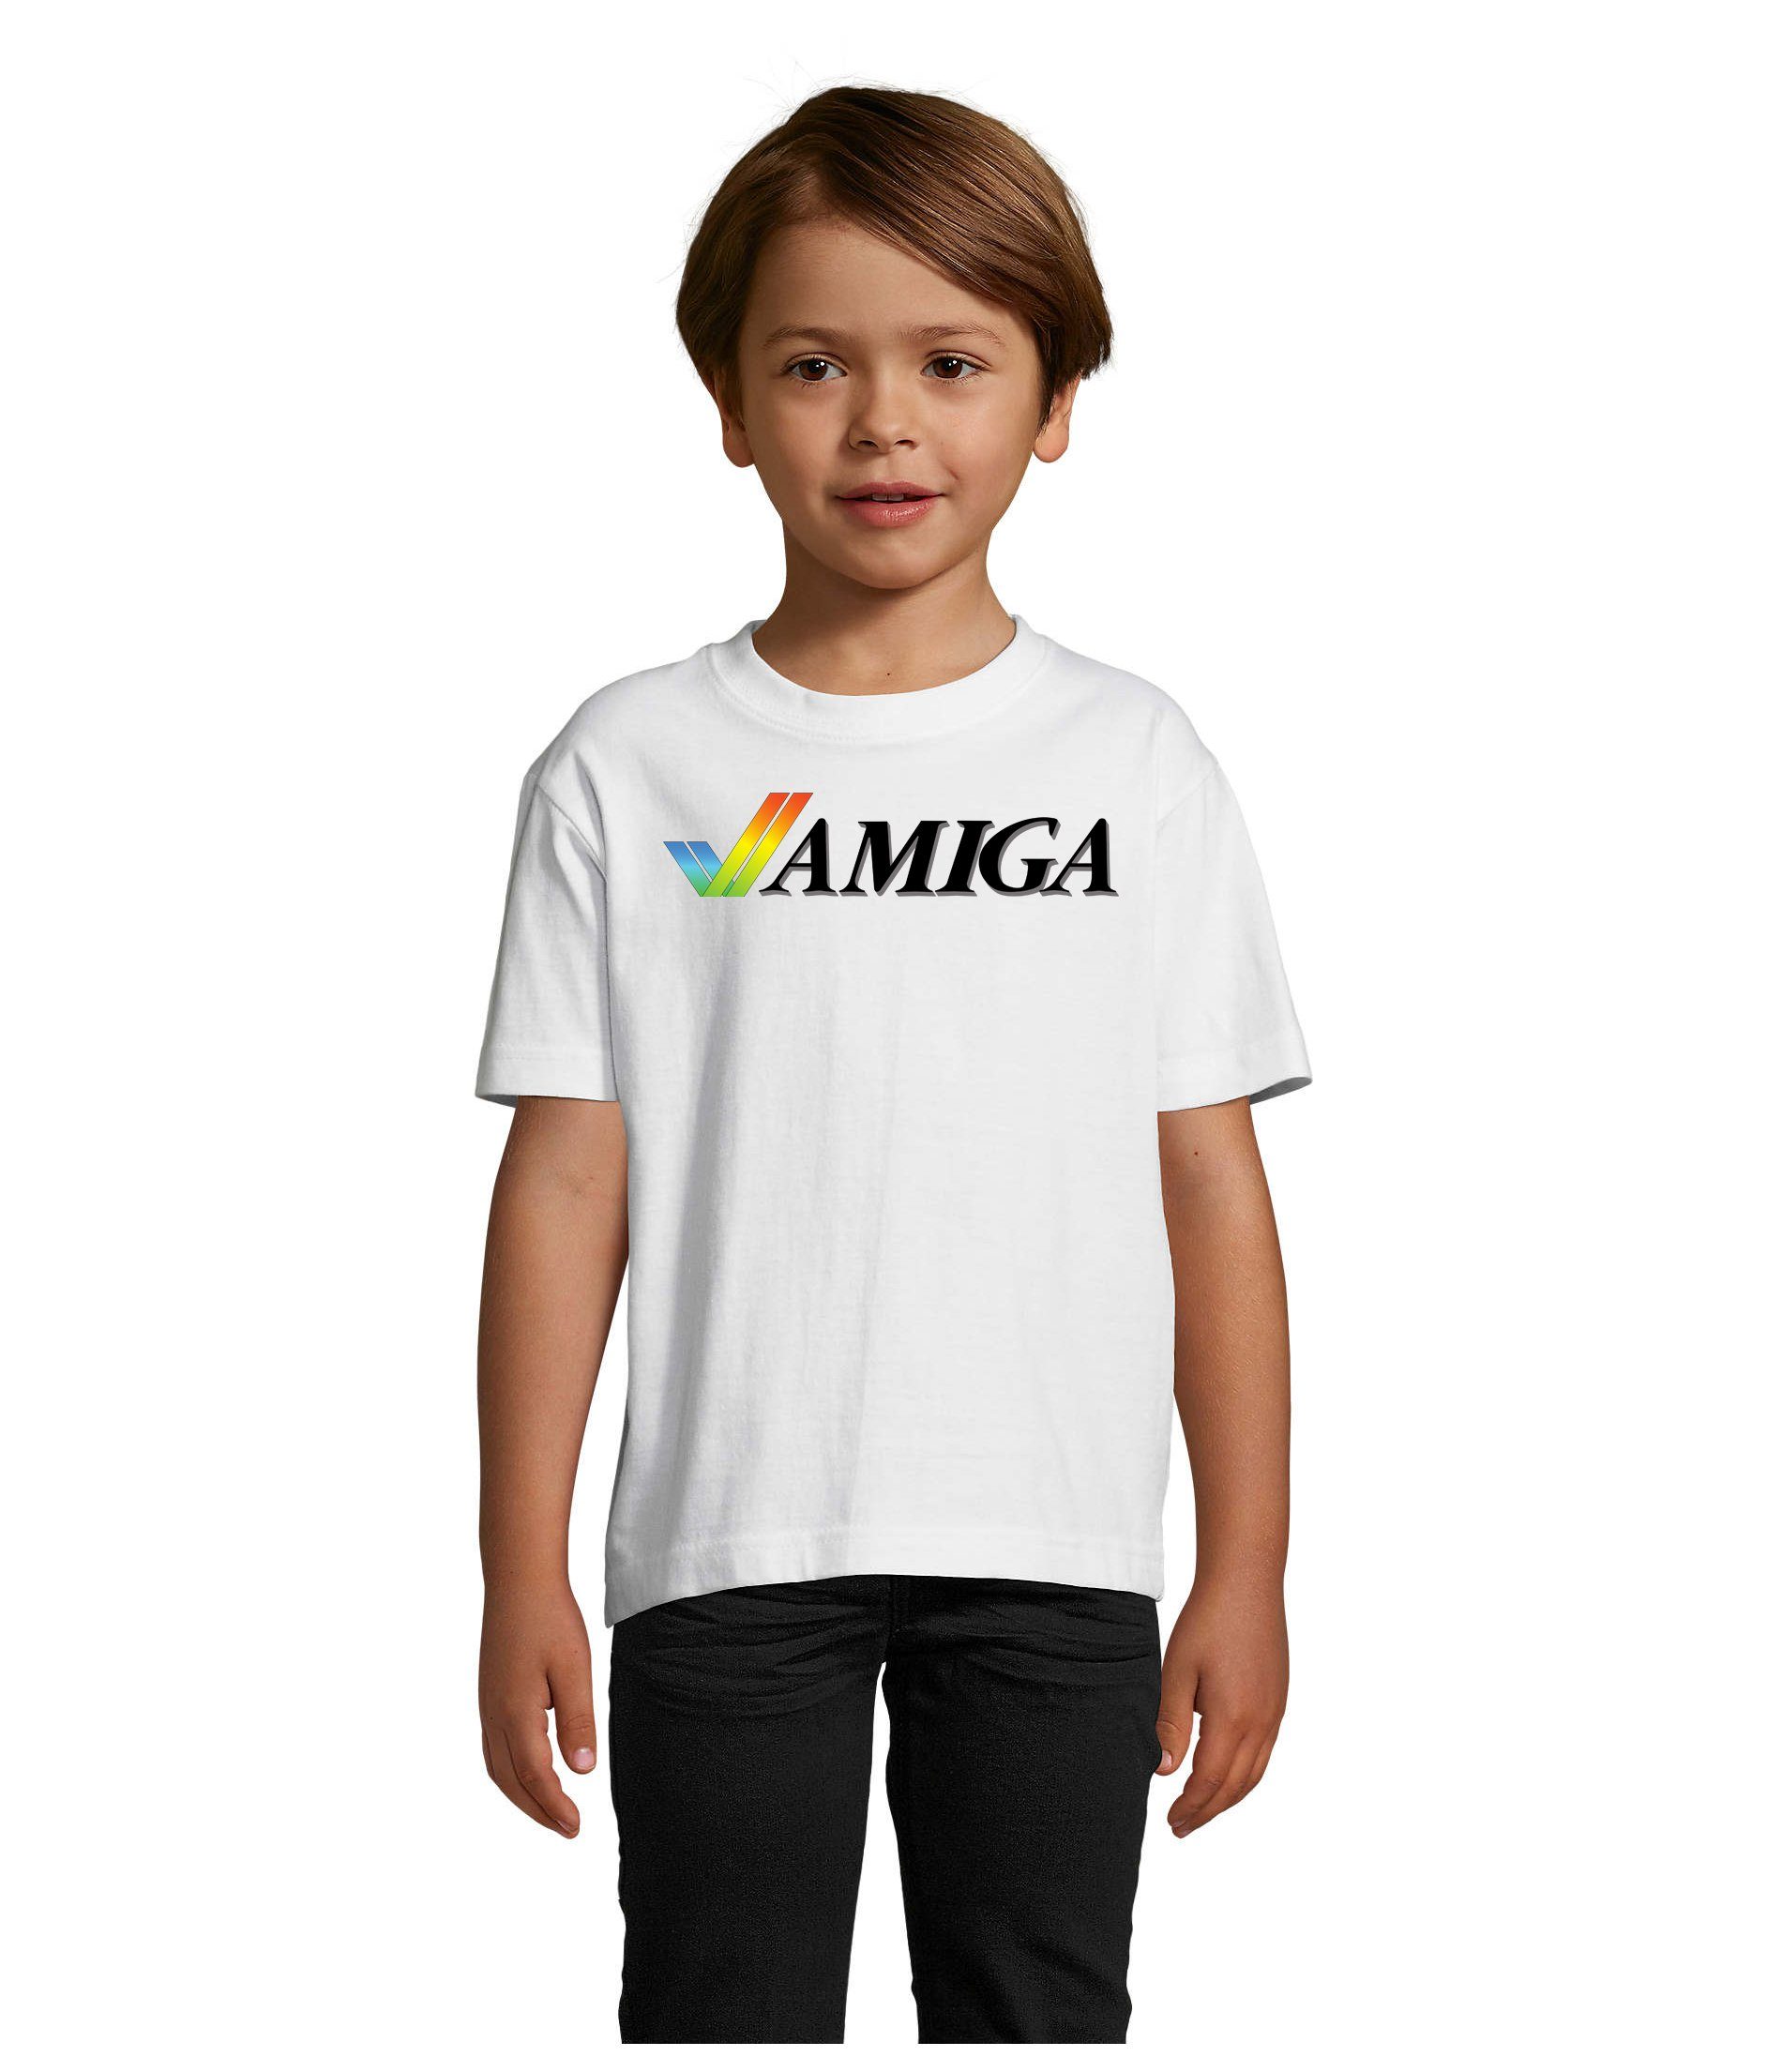 & Atari Weiss Amiga & Spiele Nintendo Brownie Kinder Commodore T-Shirt Blondie Jungen Konsole Mädchen